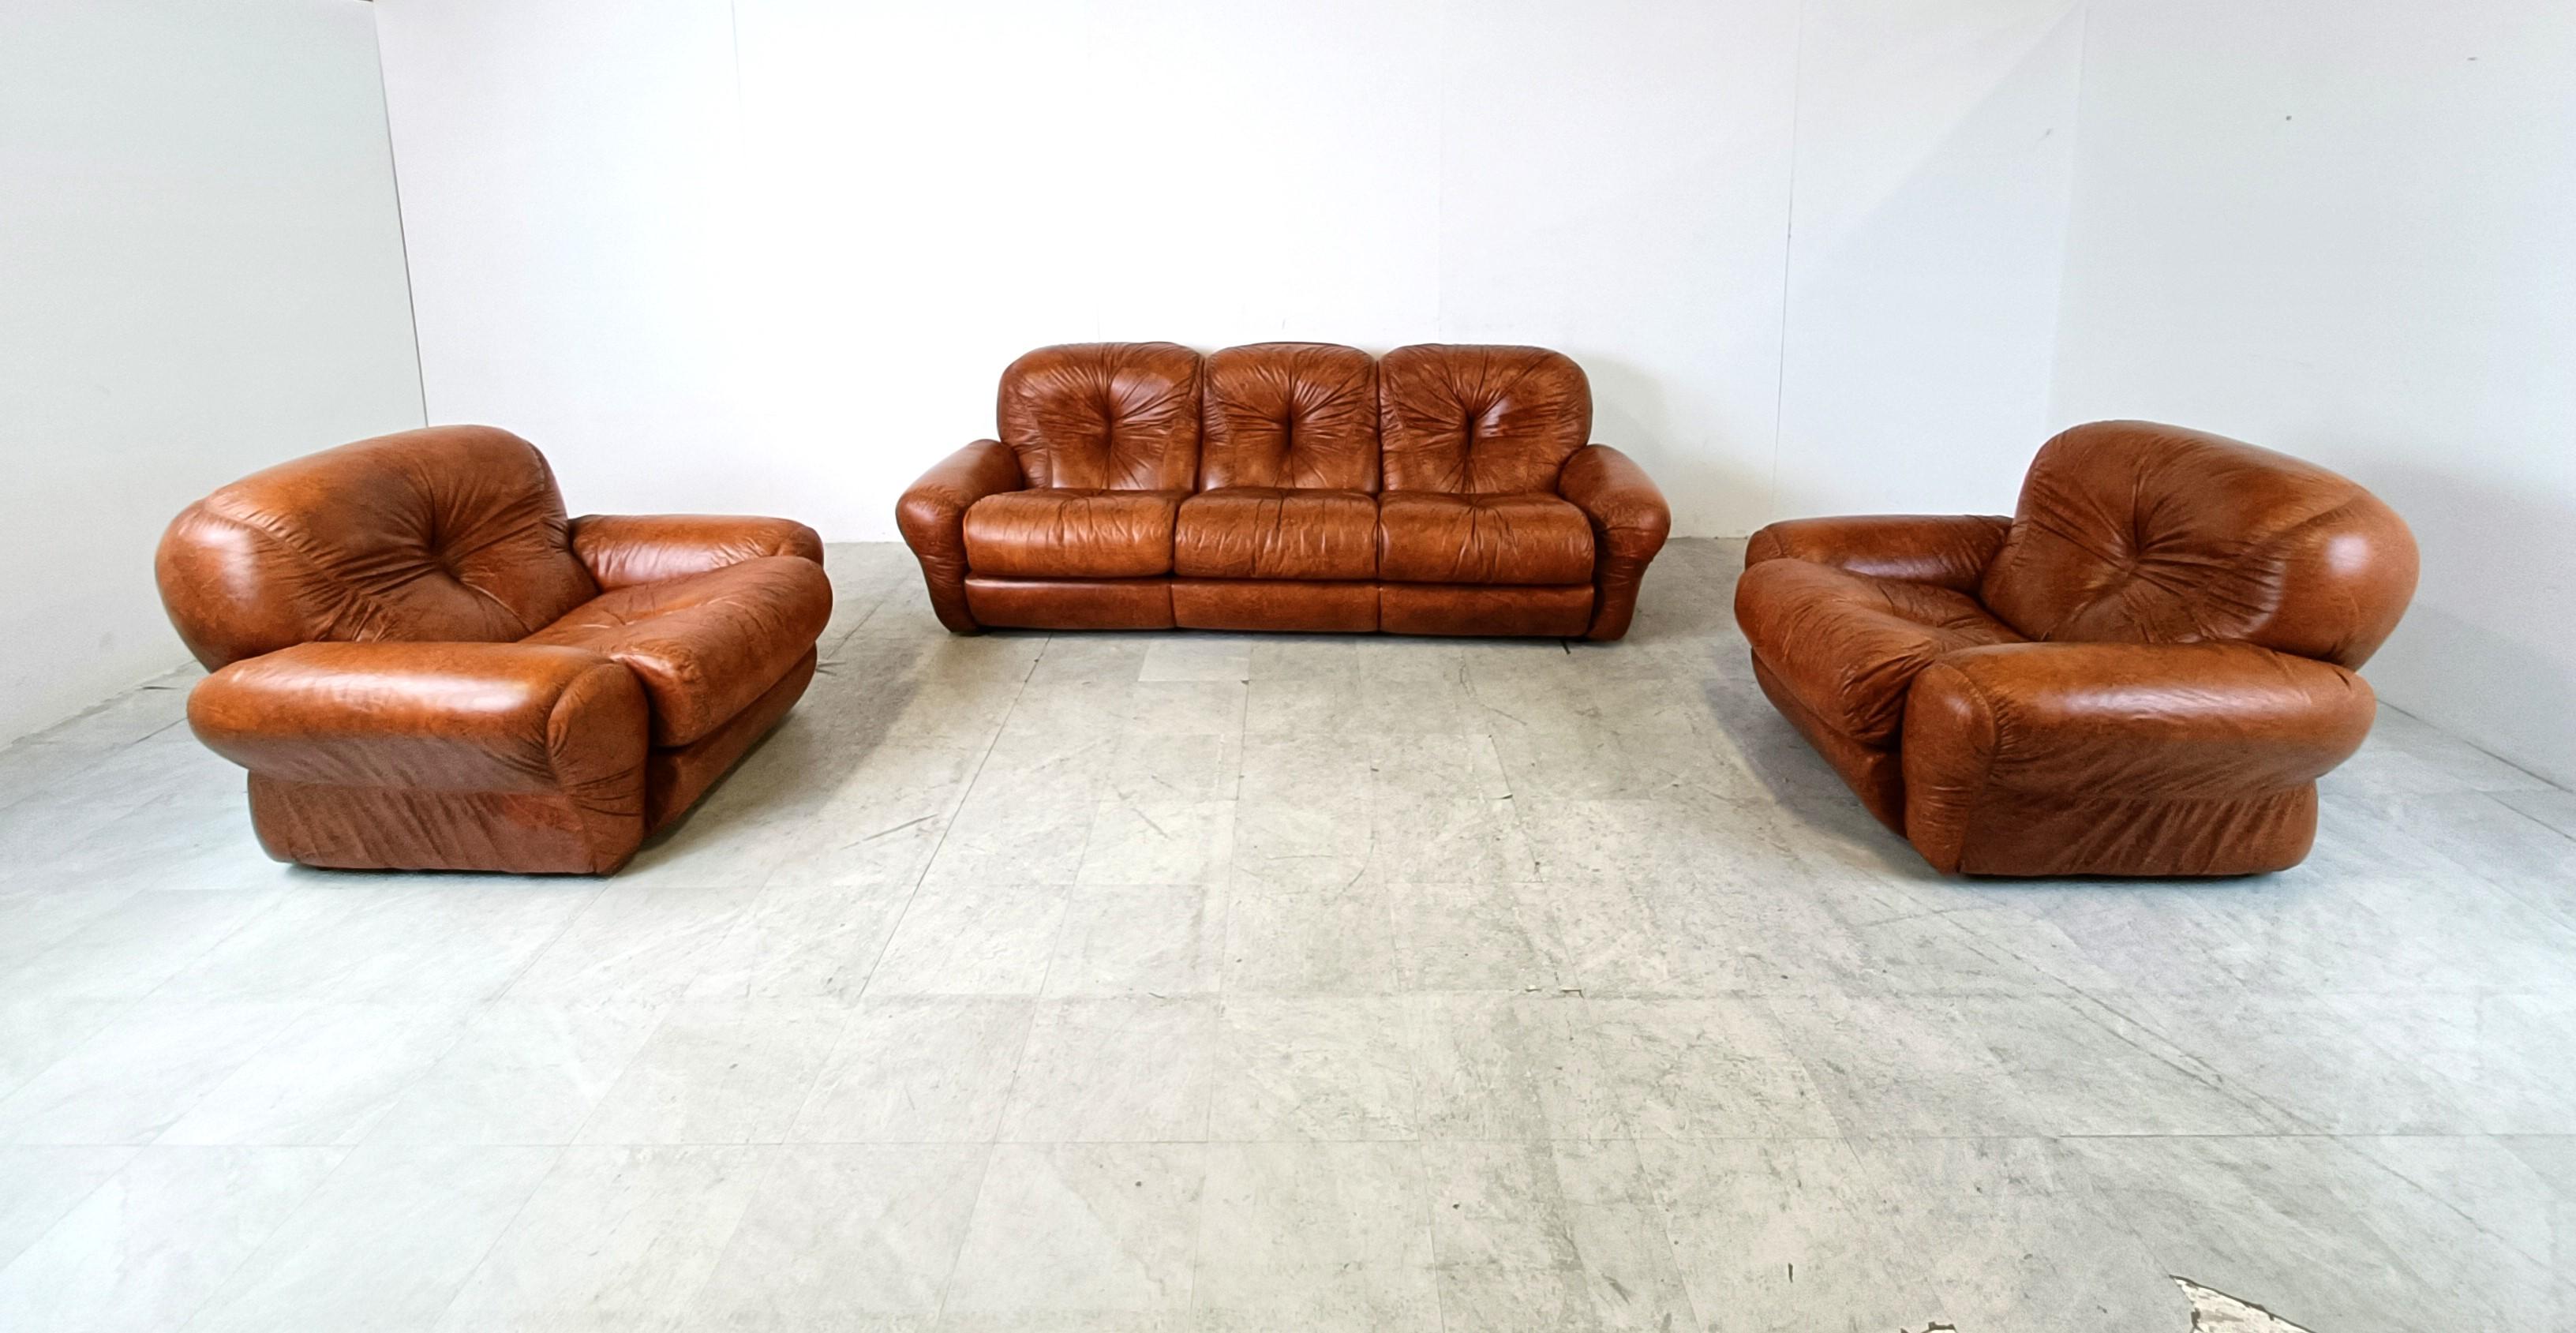 Ensemble de canapés du milieu du siècle en similicuir marron conçu en Italie dans les années 1970.

Coussins très épais et confortables au design élégant.

L'ensemble se compose d'un canapé trois places et de deux fauteuils.

Bon état